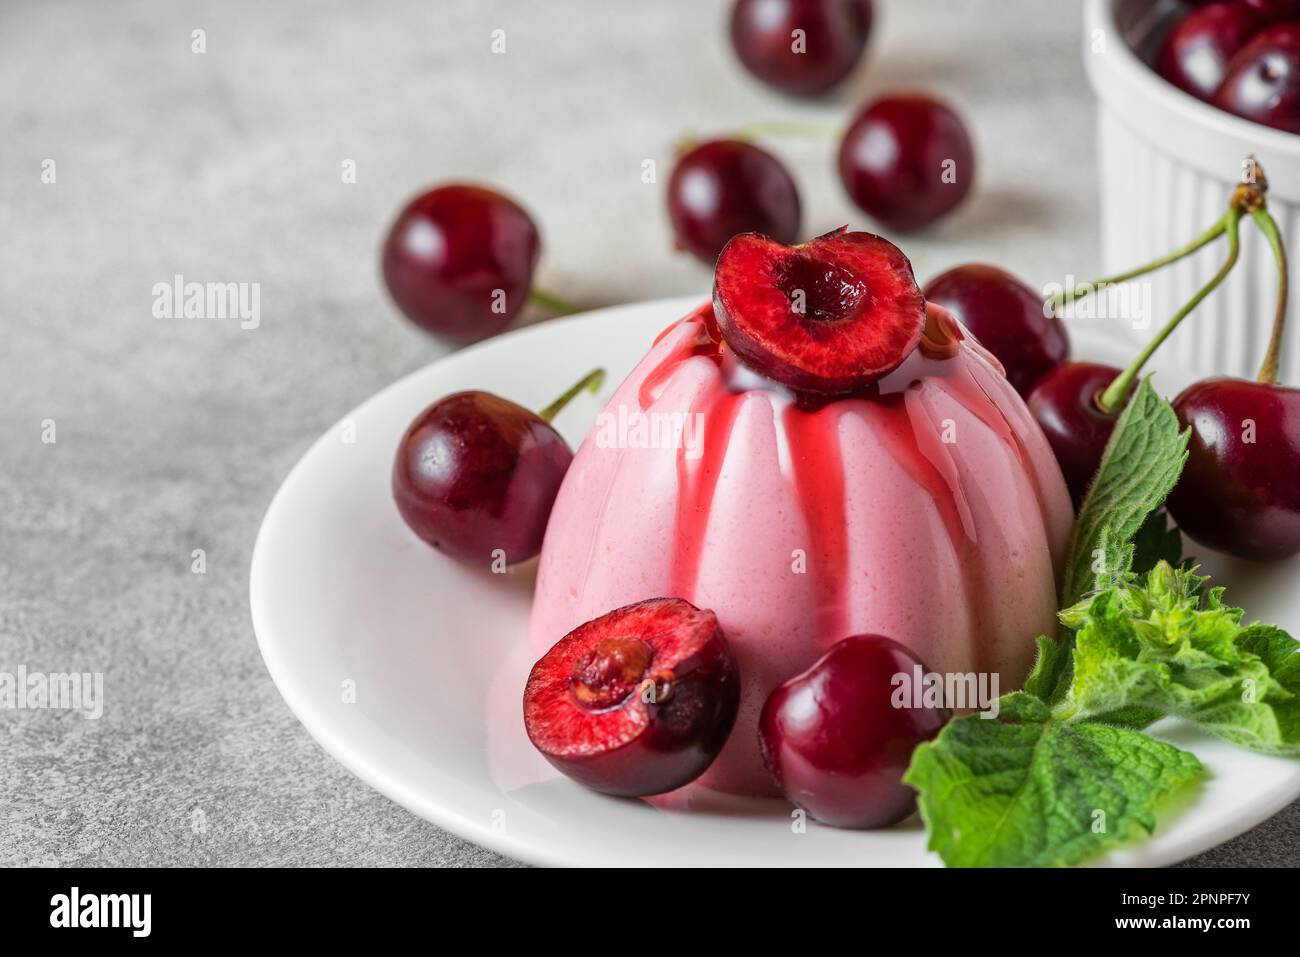 Köstliches Cherry-Panna-Cotta-Dessert mit frischen Kirschbeeren, Fruchtsauce und Minze auf einem Teller auf einem grauen Tisch. Italienisches Essen. Stockfoto